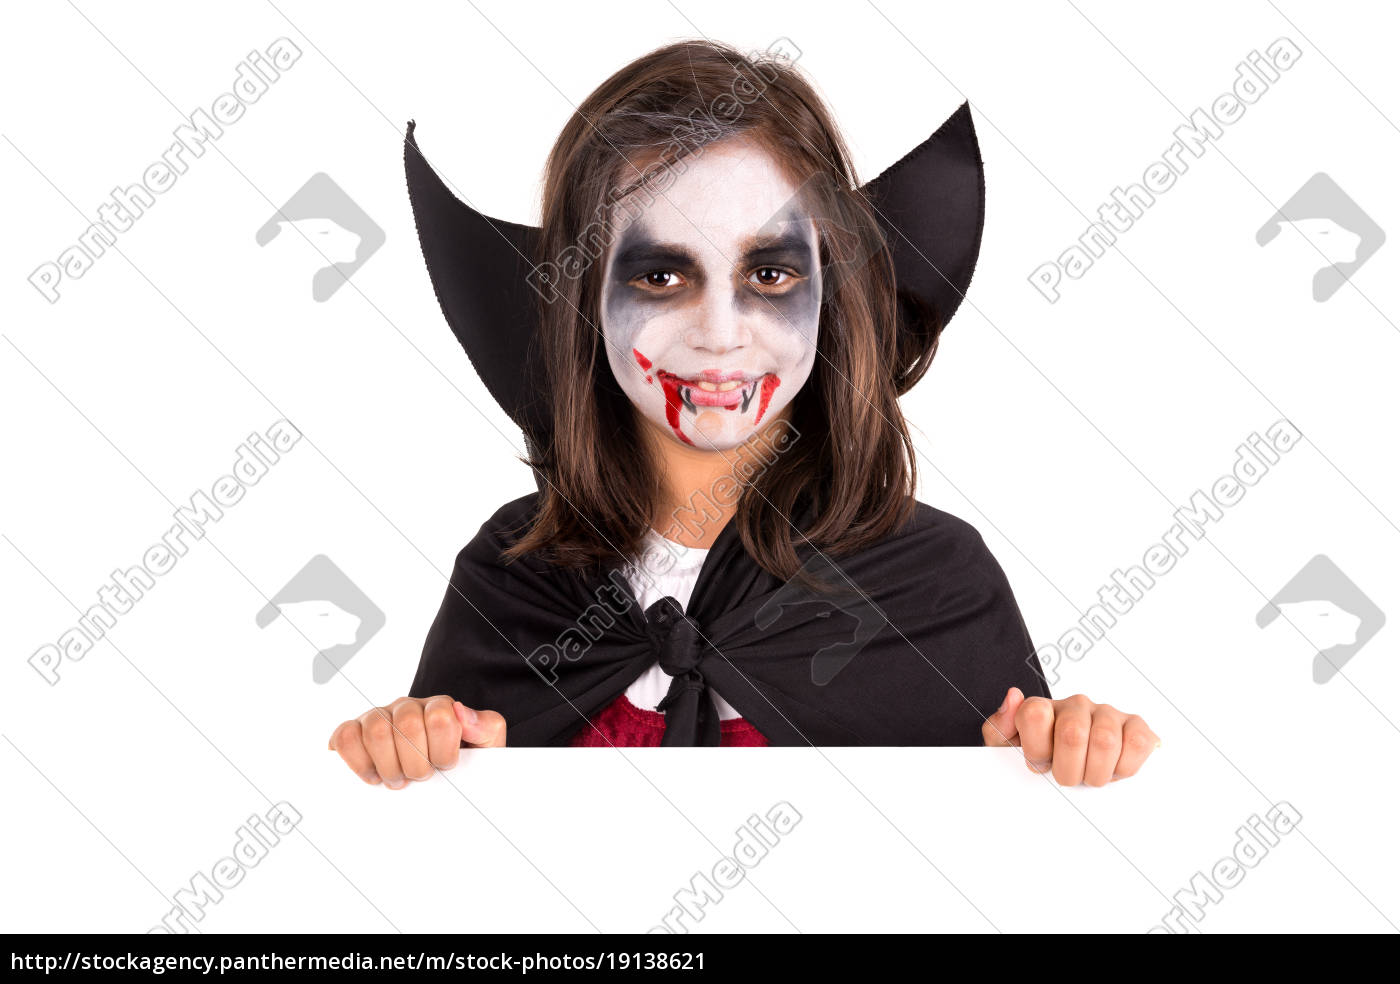 Homem Alegre Na Fantasia De Vampiro De Halloween Imagem de Stock